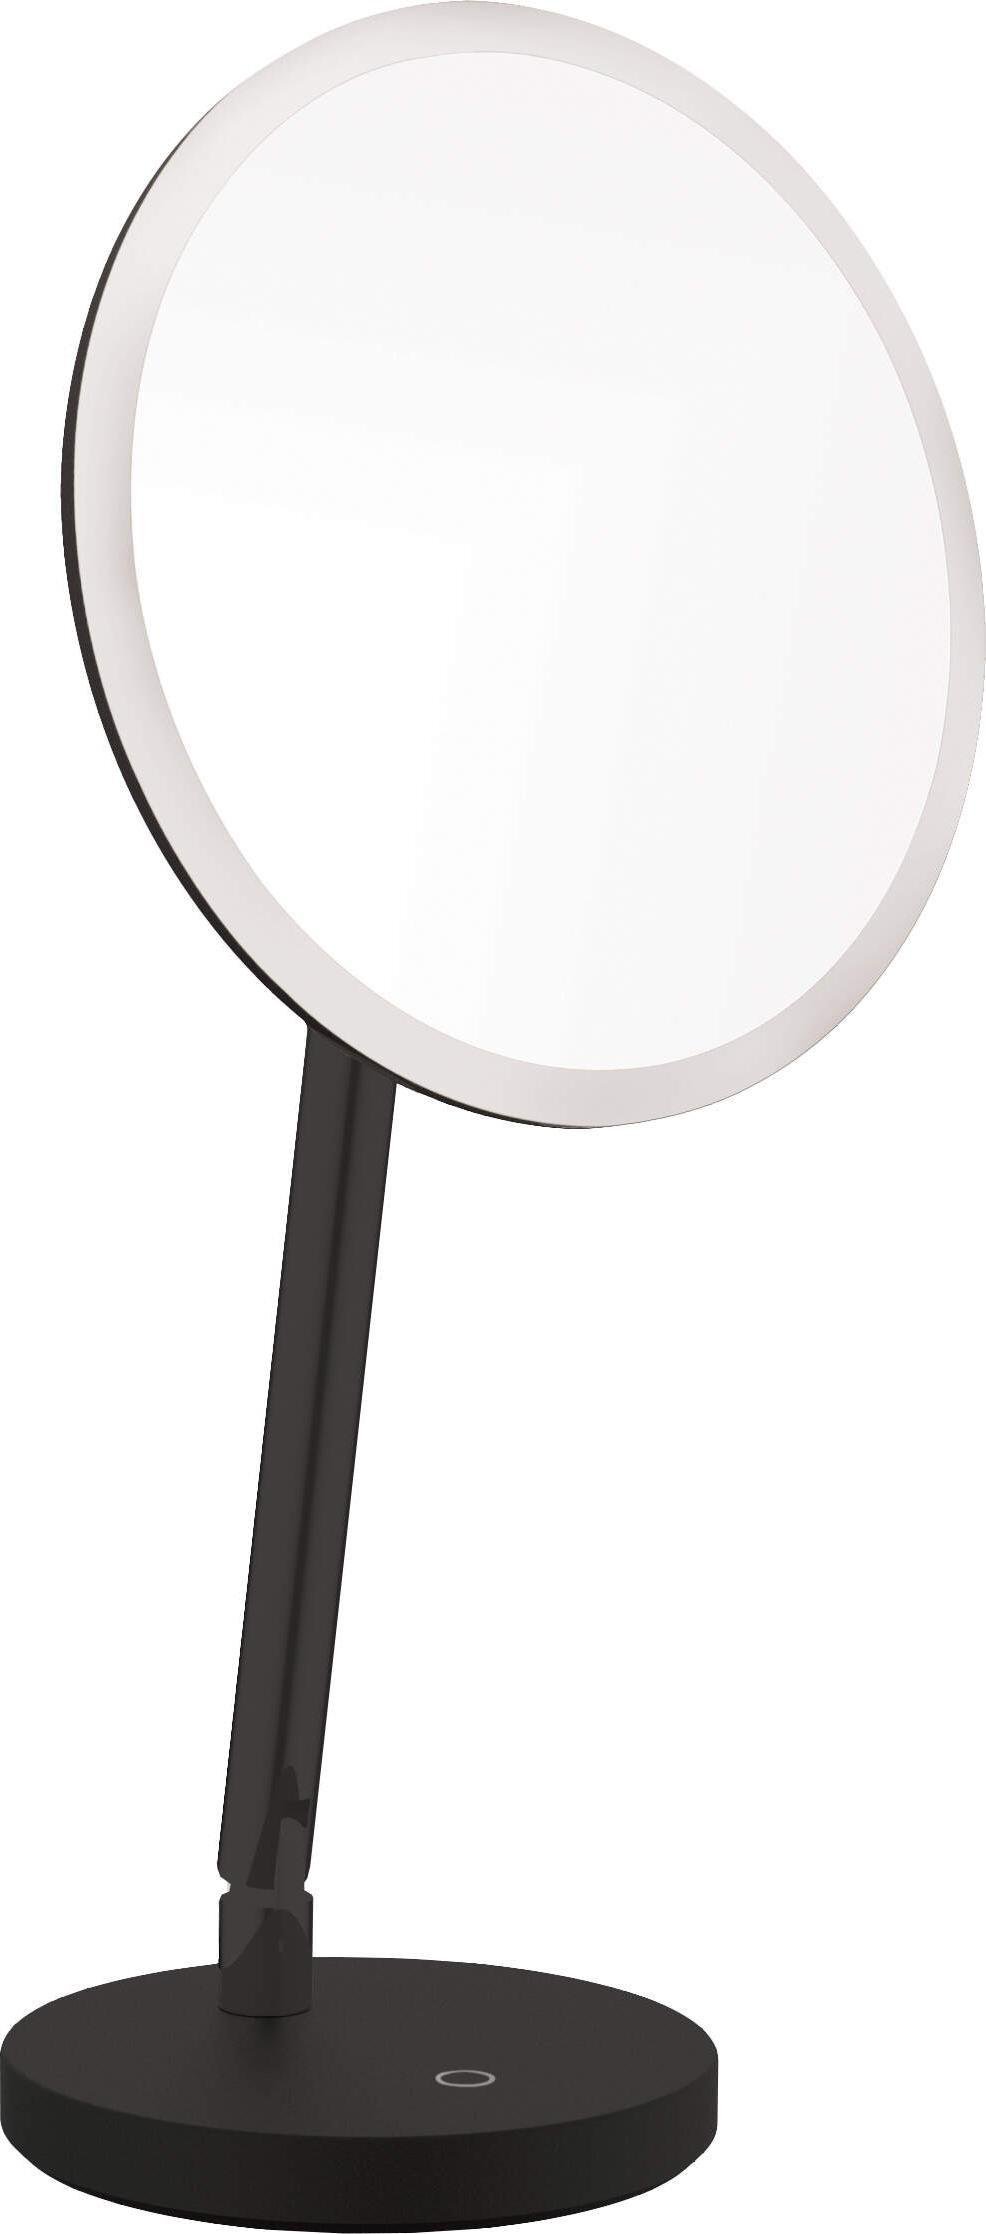 Oglinzi cosmetice - Oglinda cosmetica in picioare - Iluminare LED din spate